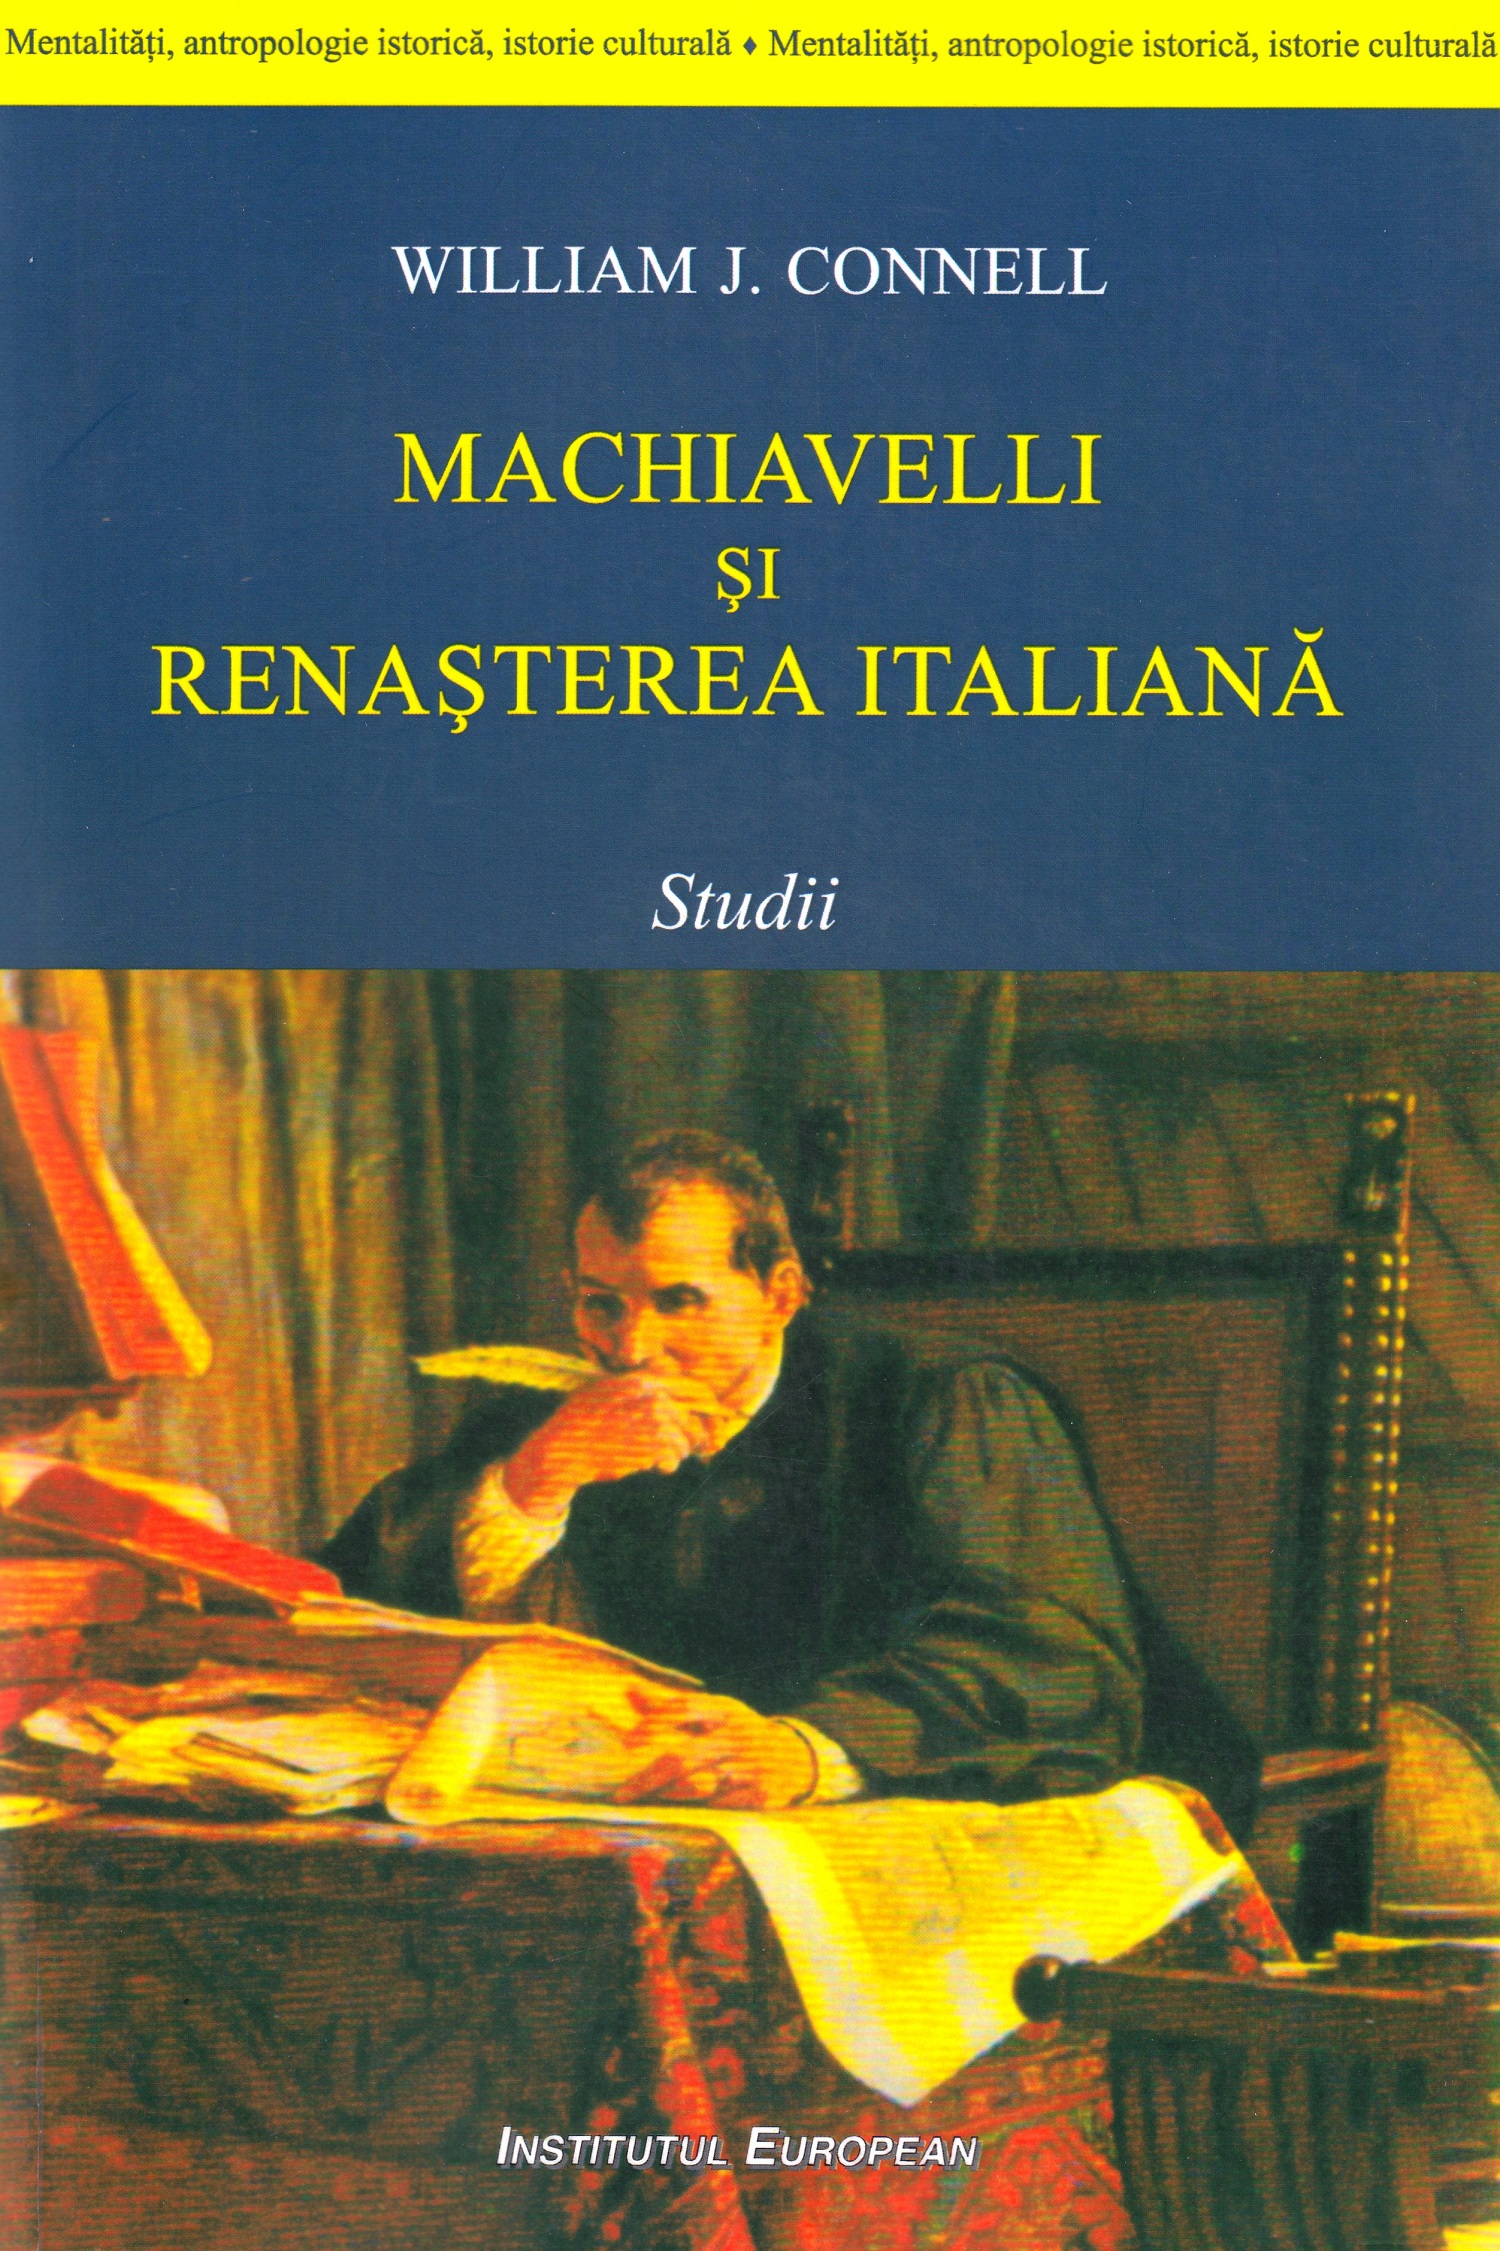 Machiavelli si renasterea italiana - William J. Connell